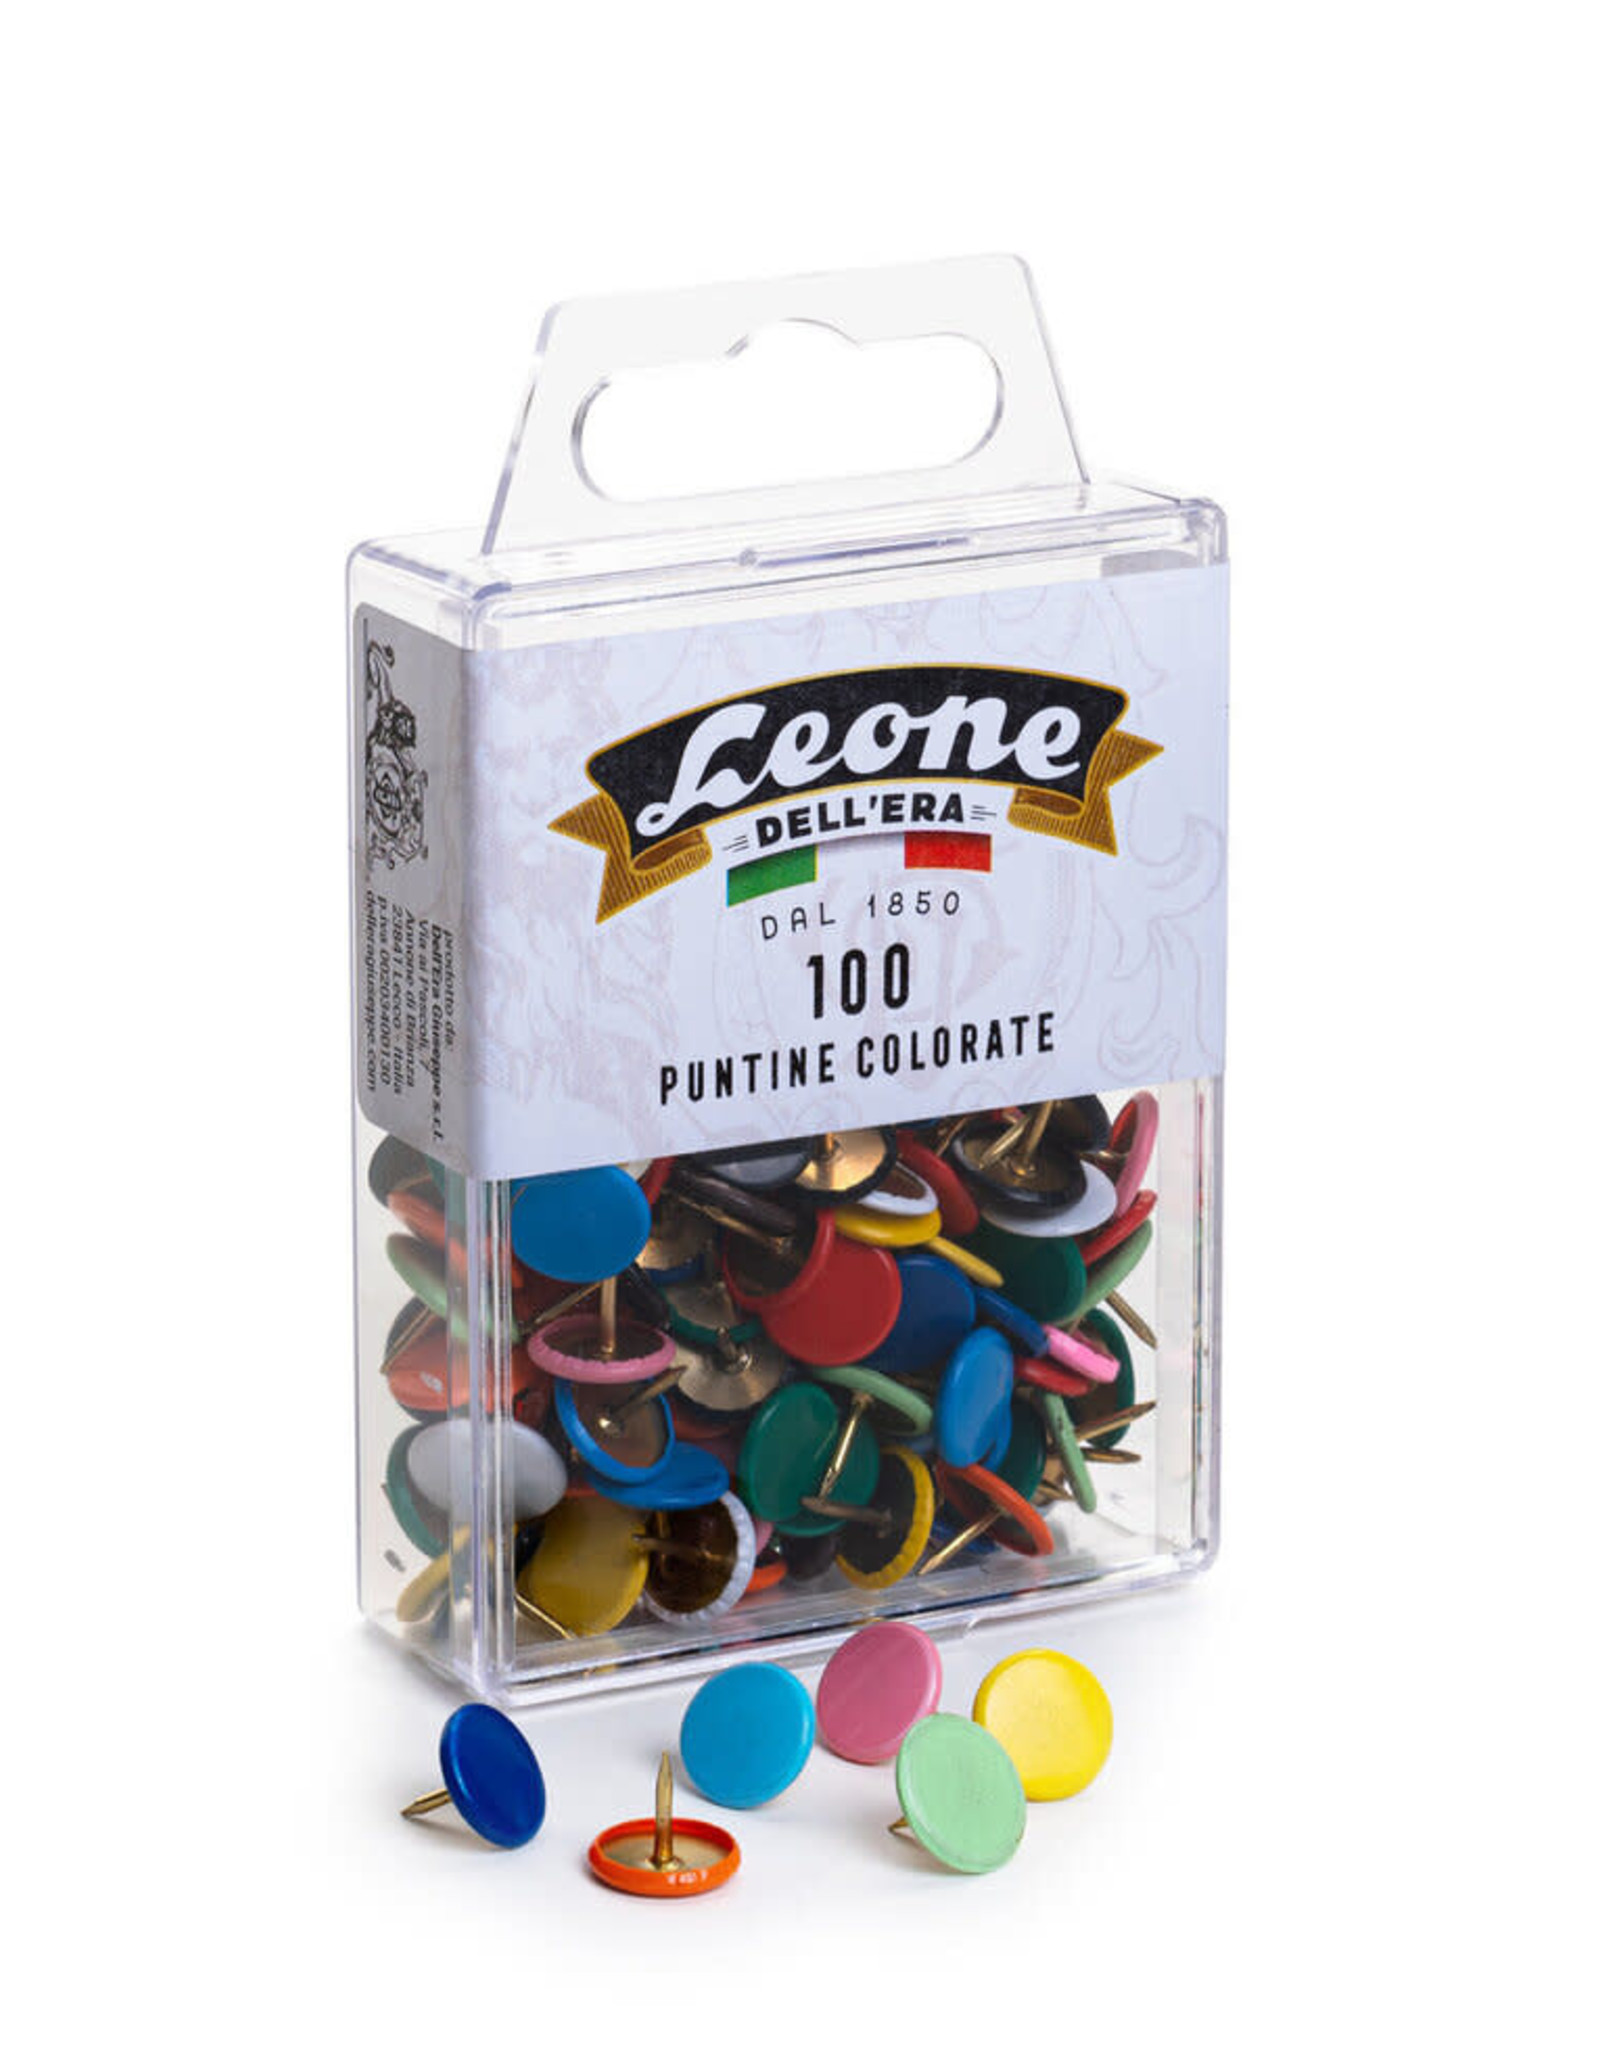 Leone Dellera Push Pins 100 ct box